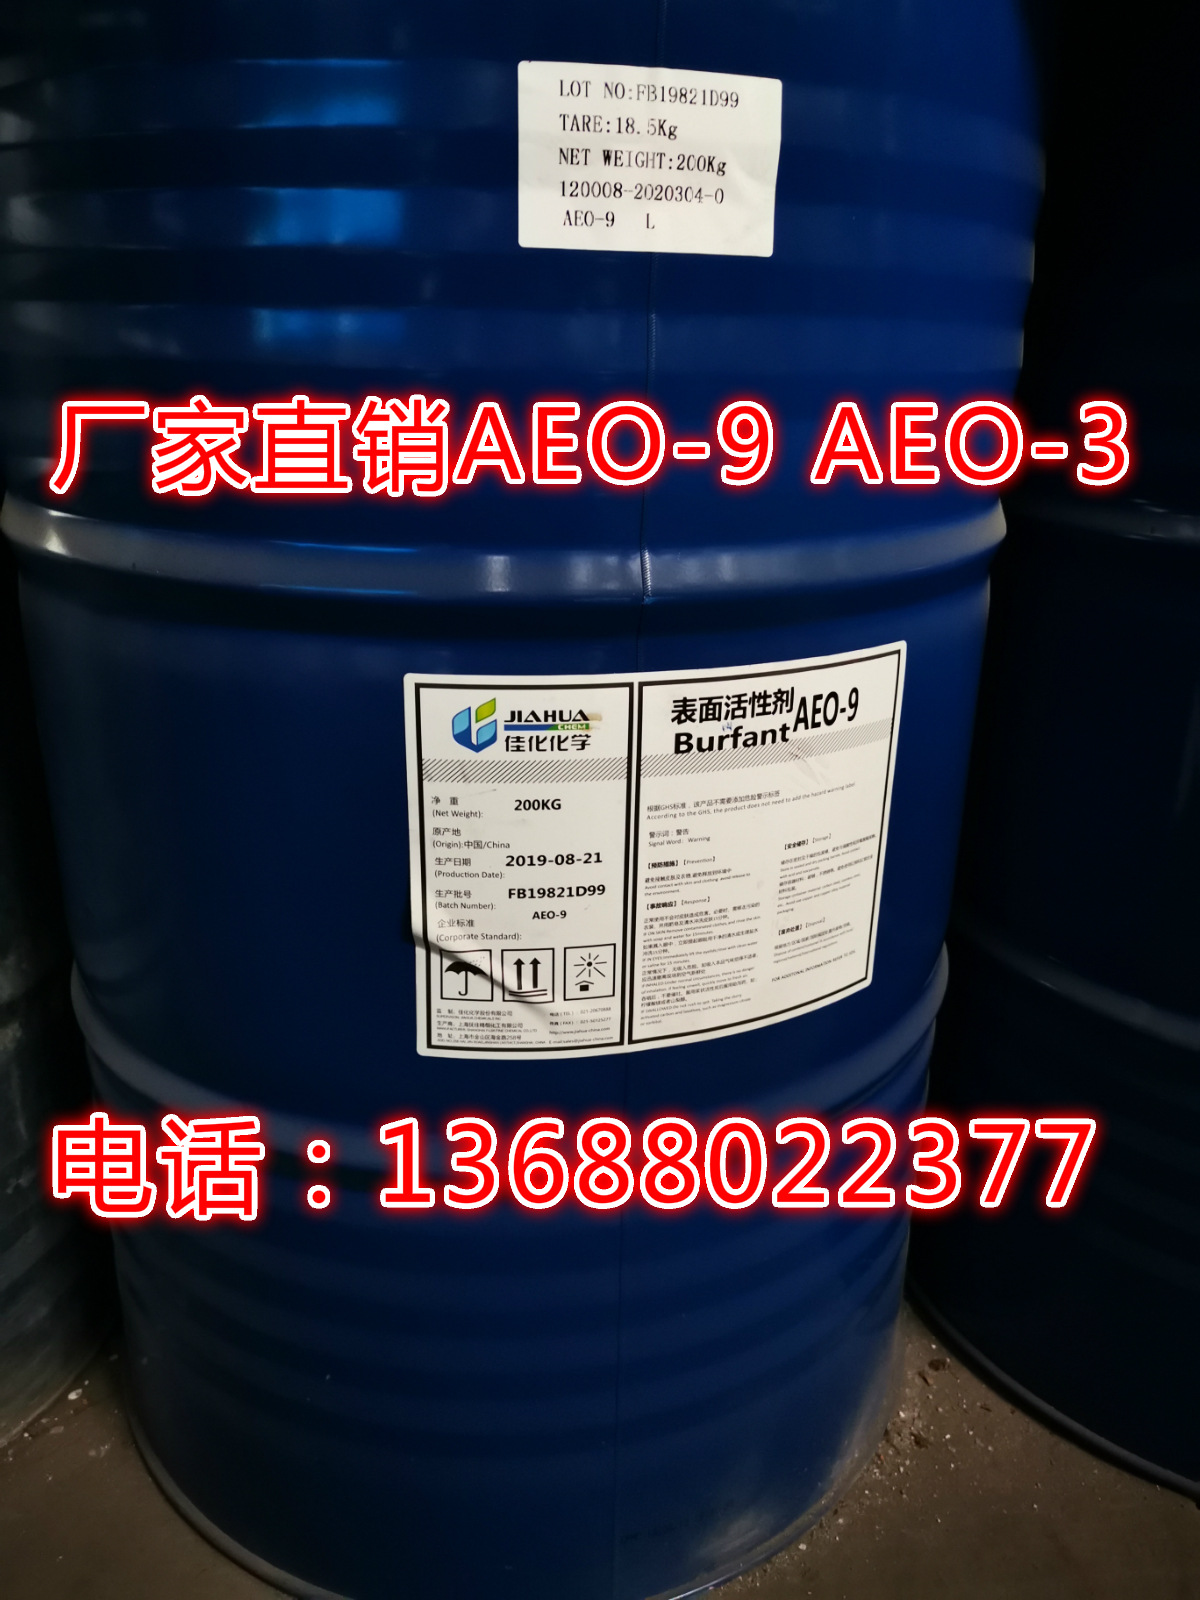 厂家直销  AEO-9  AEO-3 脂肪醇聚氧乙烯醚 表面活性剂  价格优惠